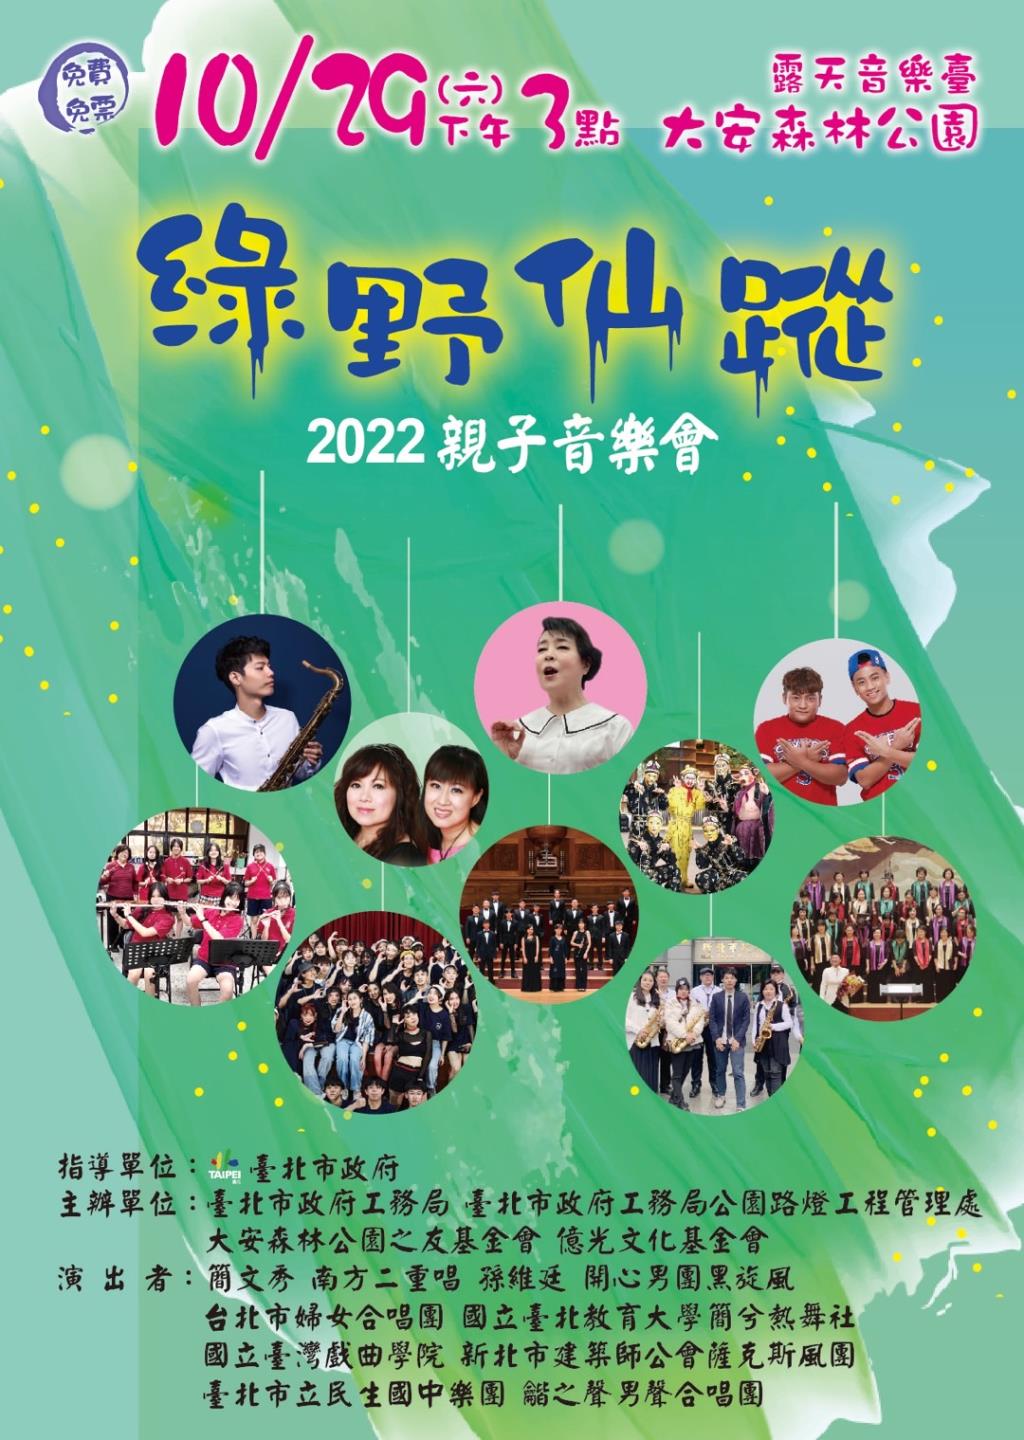 臺北市政府工務局公園路燈工程管理處舉辦「綠野仙蹤2022親子音樂會」